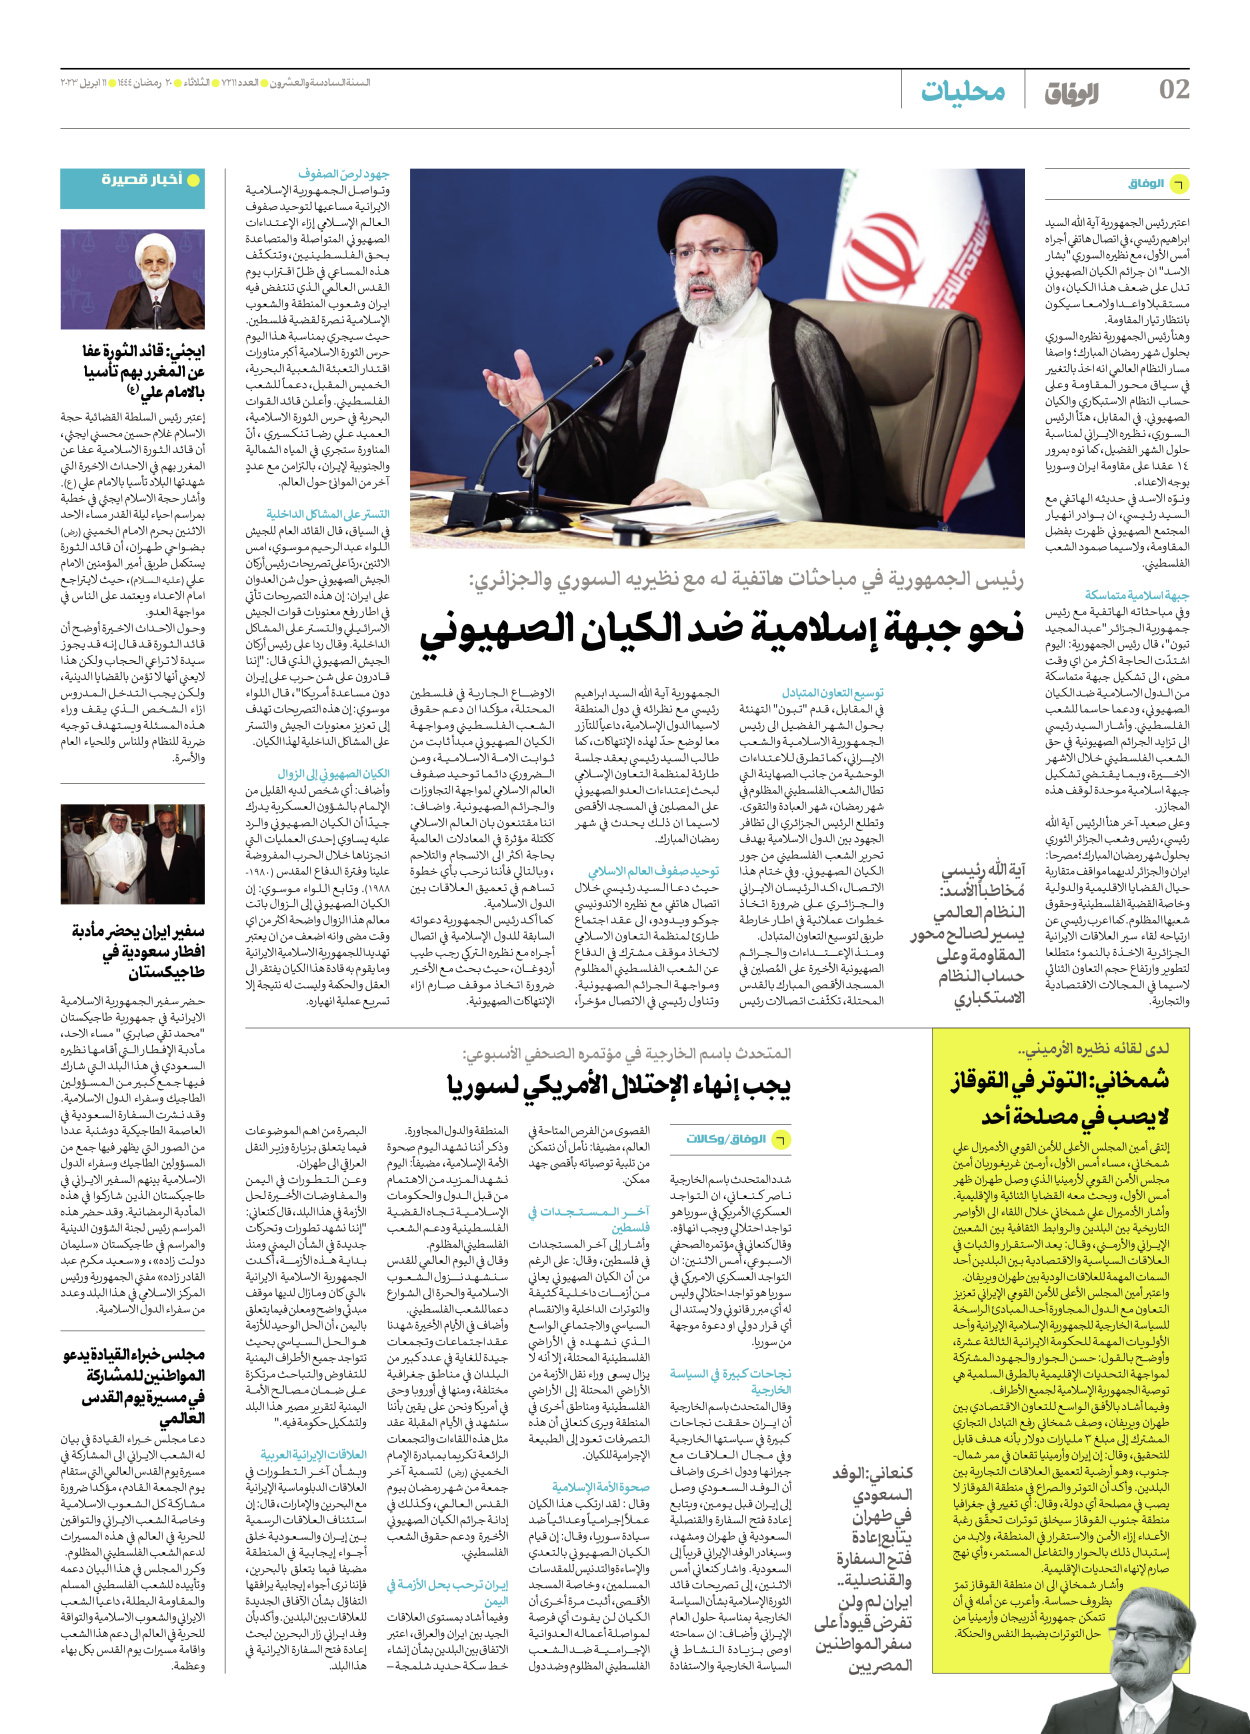 صحیفة ایران الدولیة الوفاق - العدد سبعة آلاف ومائتان وأحد عشر - ١١ أبريل ٢٠٢٣ - الصفحة ۲